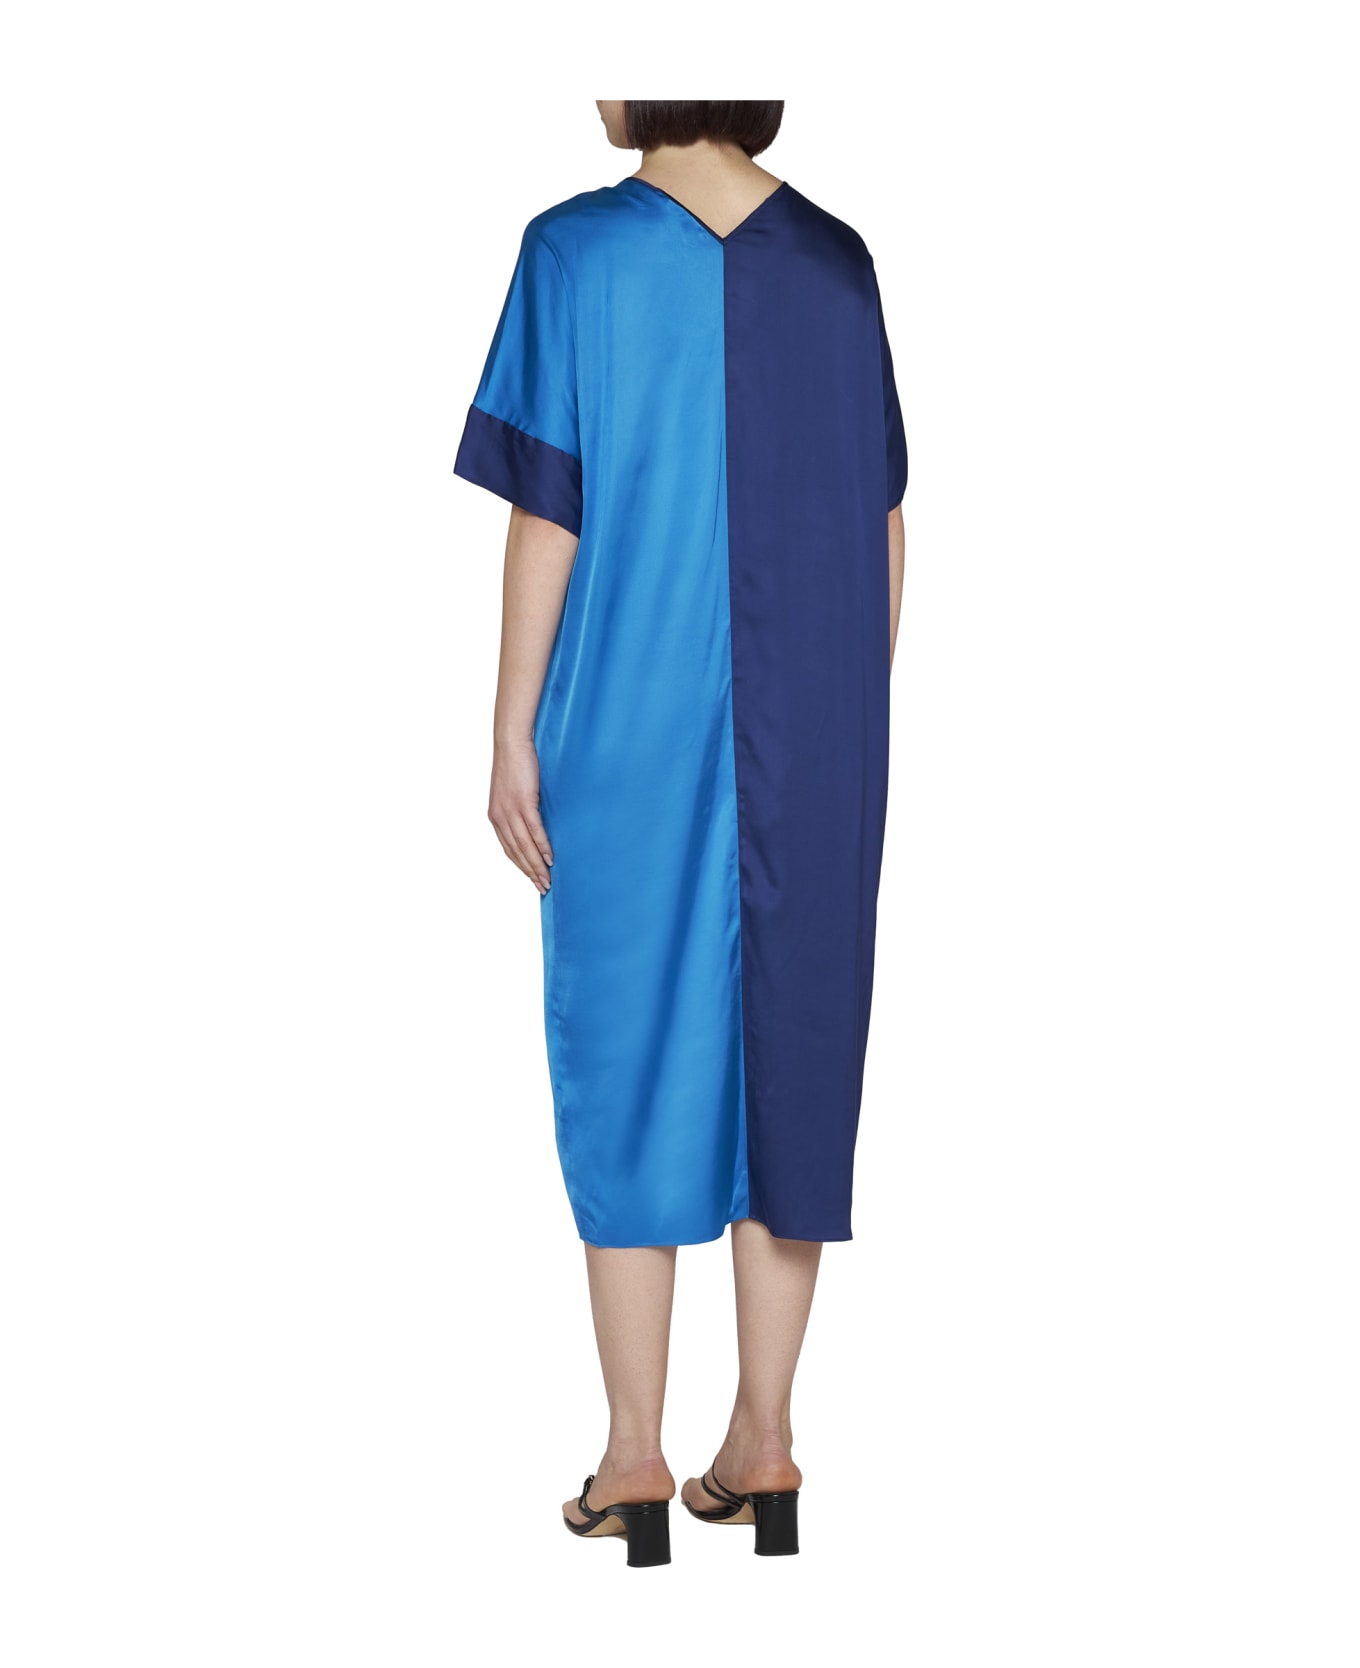 Diane Von Furstenberg Dress - Vivid blue navy